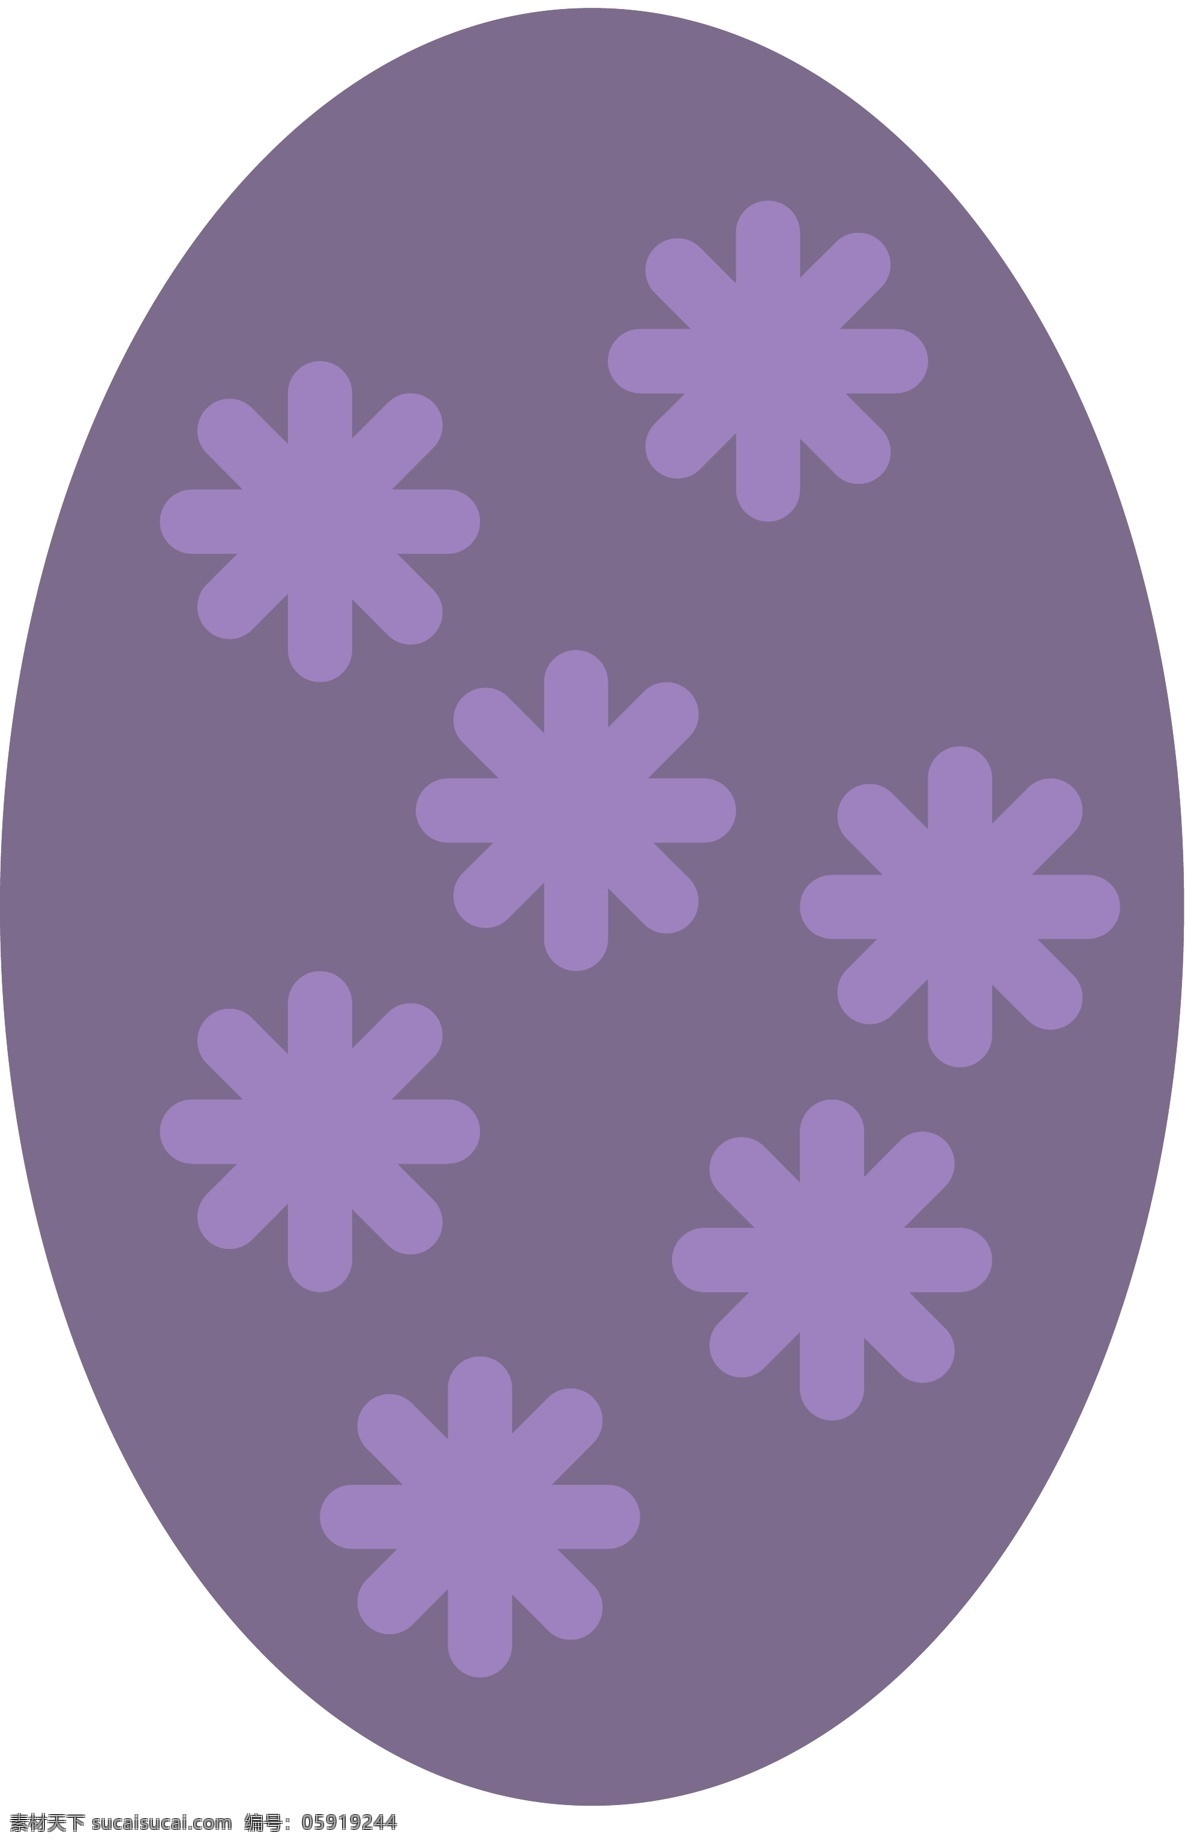 复活 蛋 icon 图标 扁平 手绘 单色 多色 简约 精美 可爱 商务 圆润 立体 复活蛋